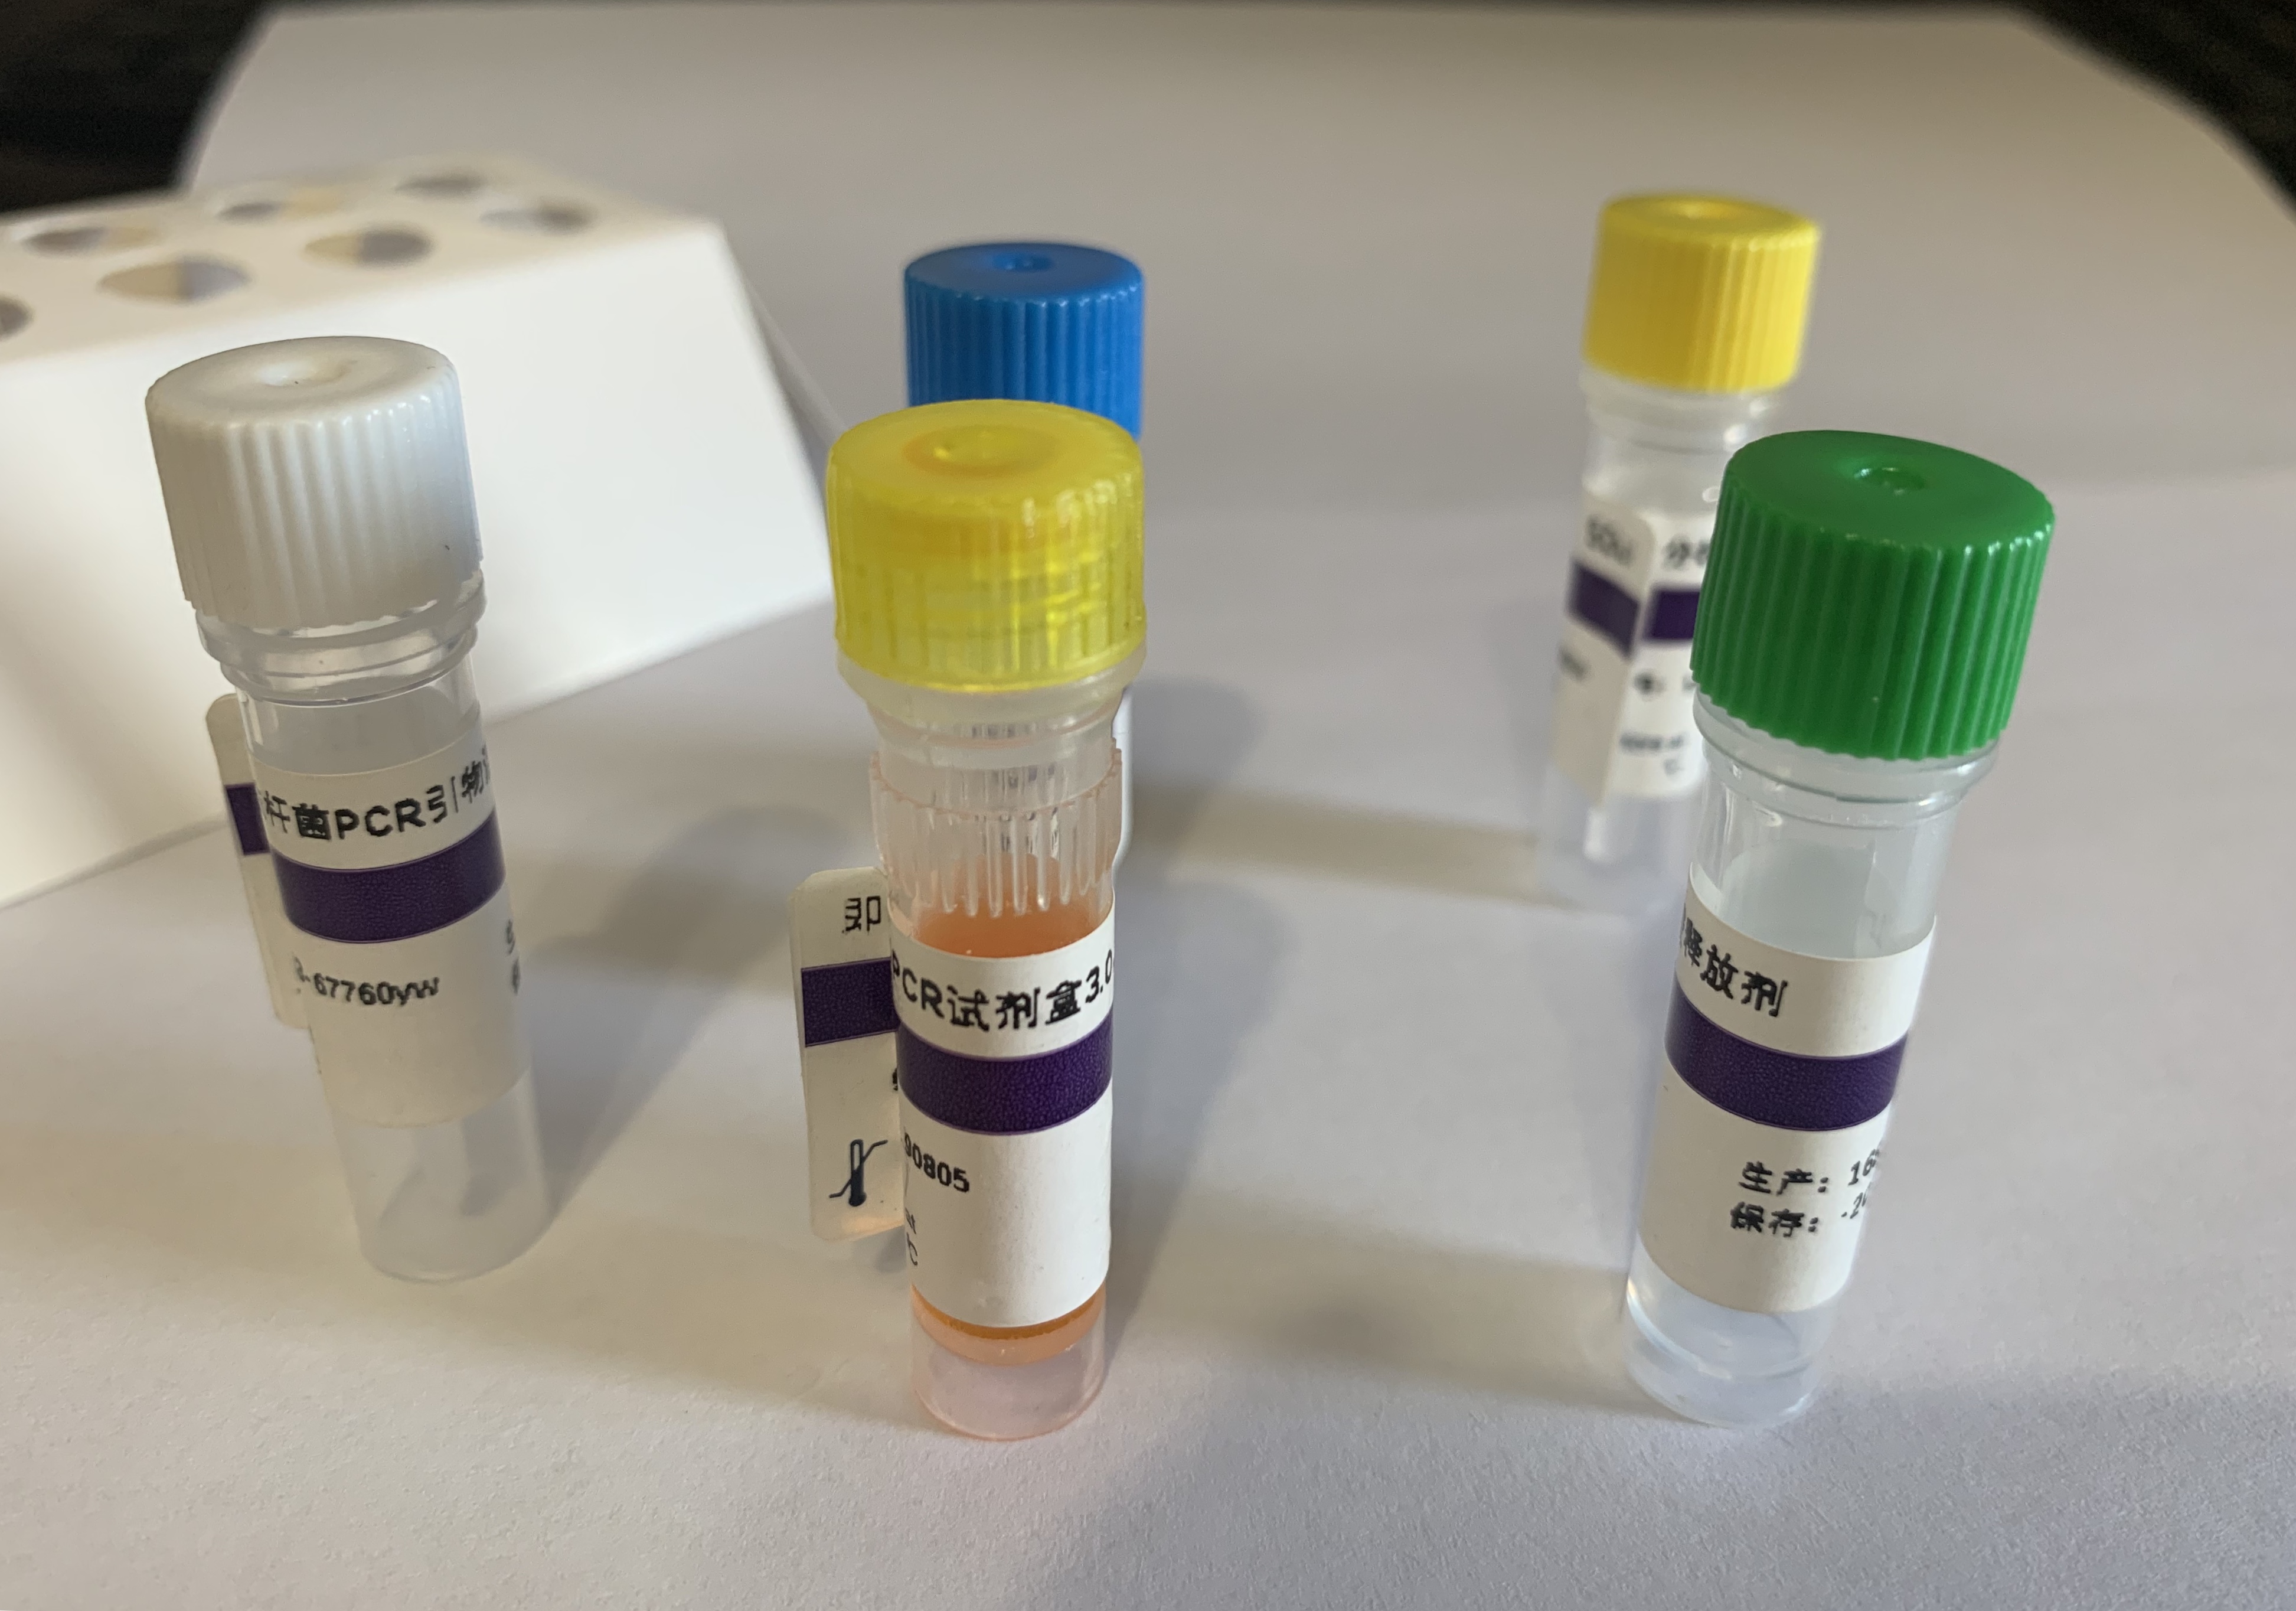 鹿源性成分探针法荧光定量PCR试剂盒